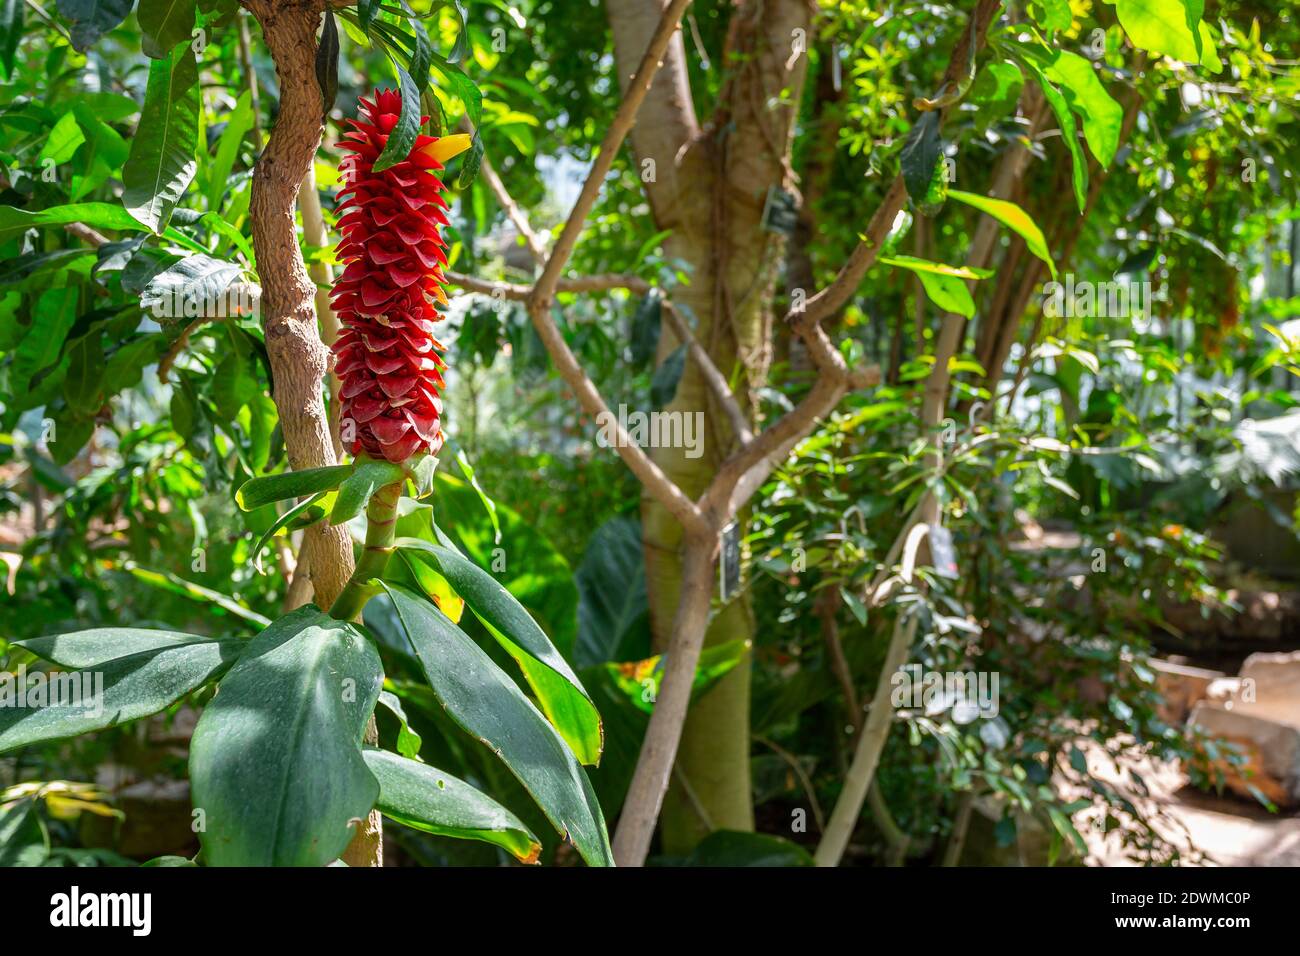 Spiralginger (Costus barbatus) ist eine mehrjährige Pflanze mit einem roten Blütenstand. Park des Tête d'Or, Lyon, Frankreich Stockfoto